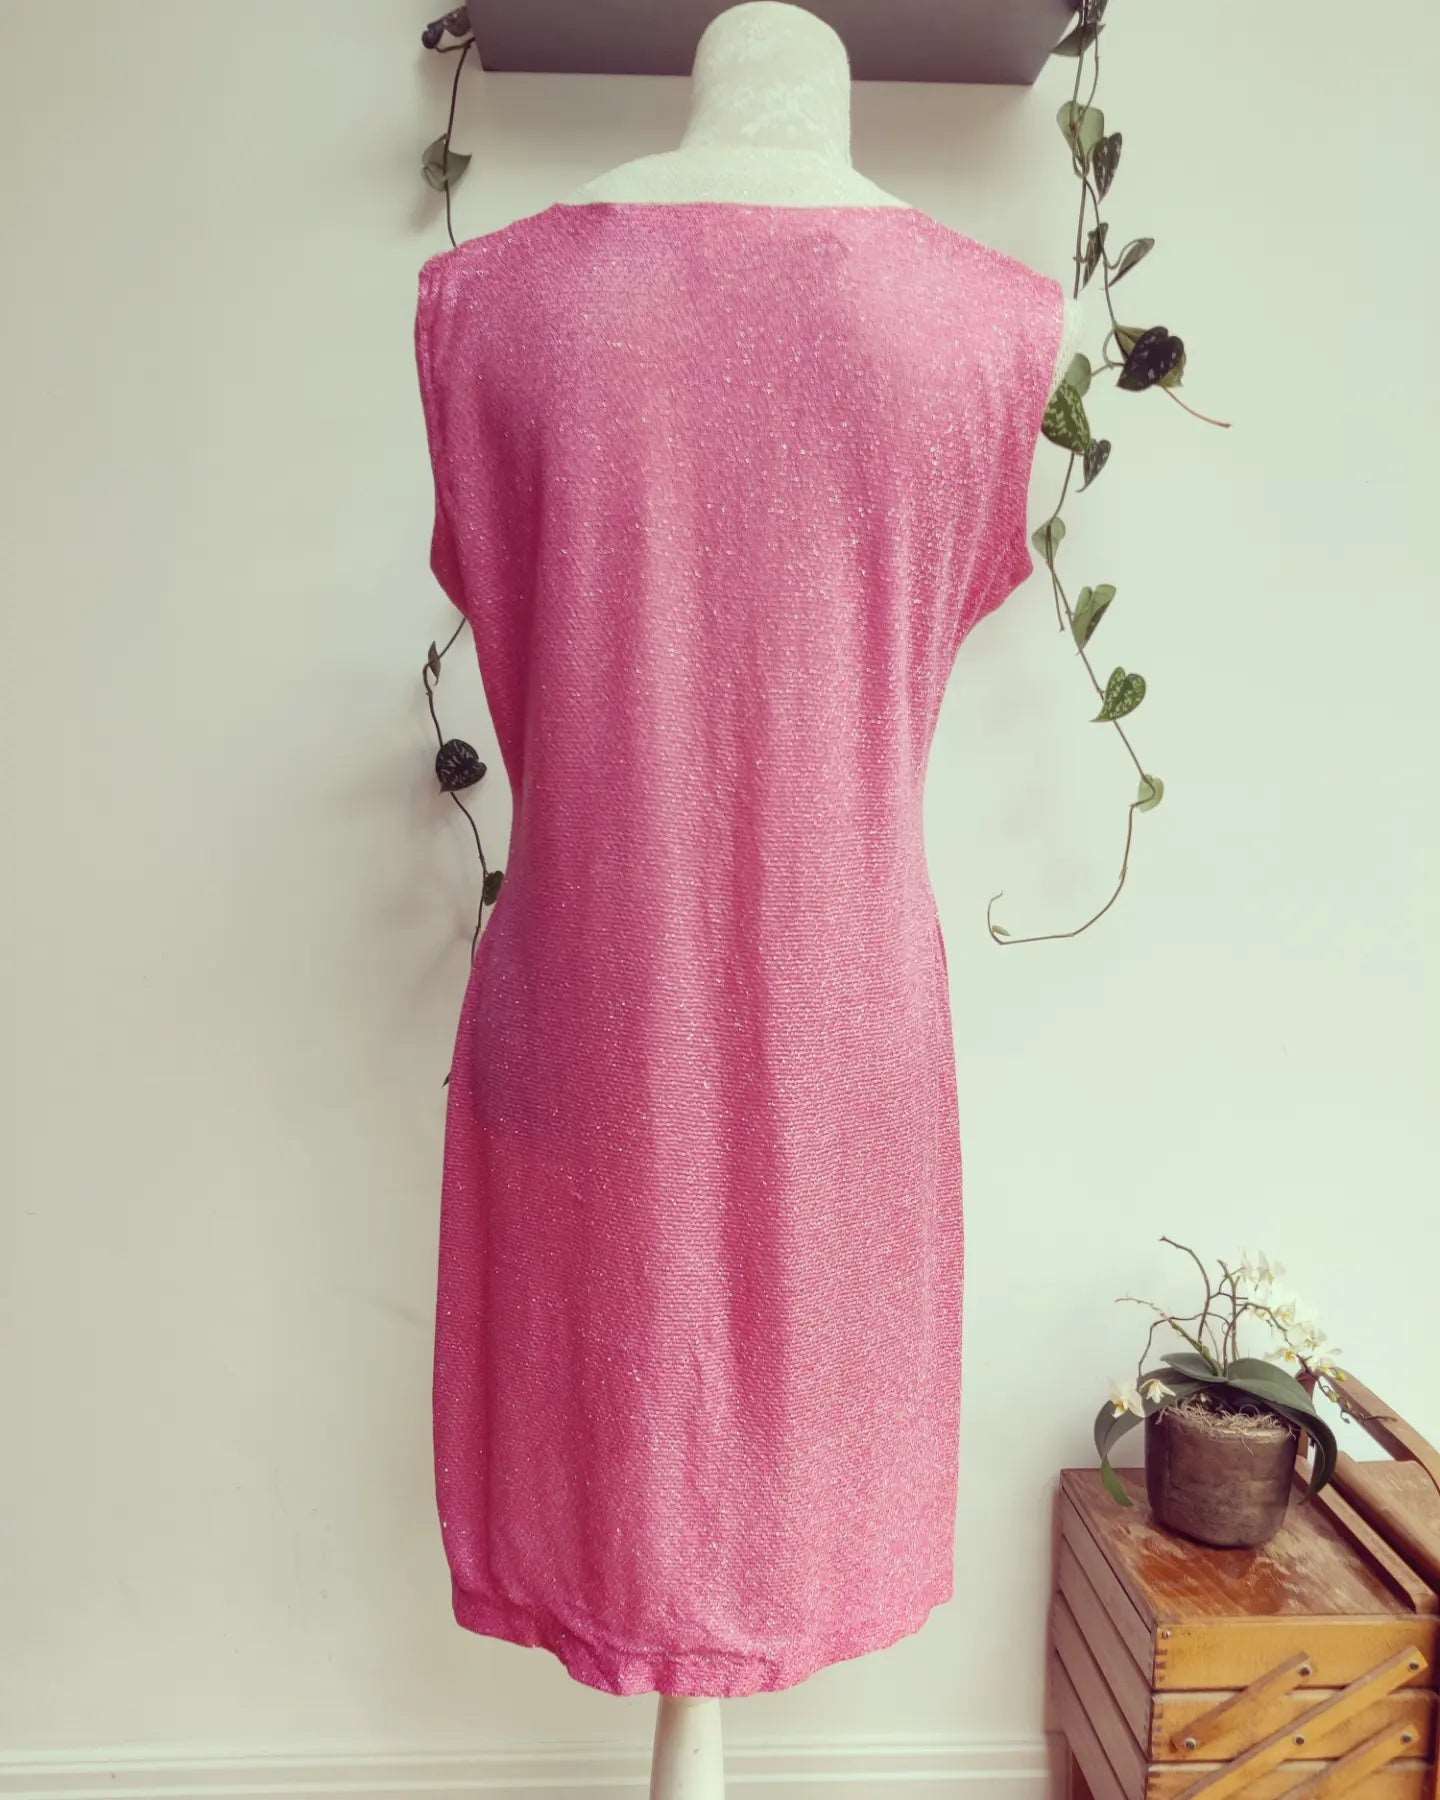 pink glitter dress, vintage for sale.